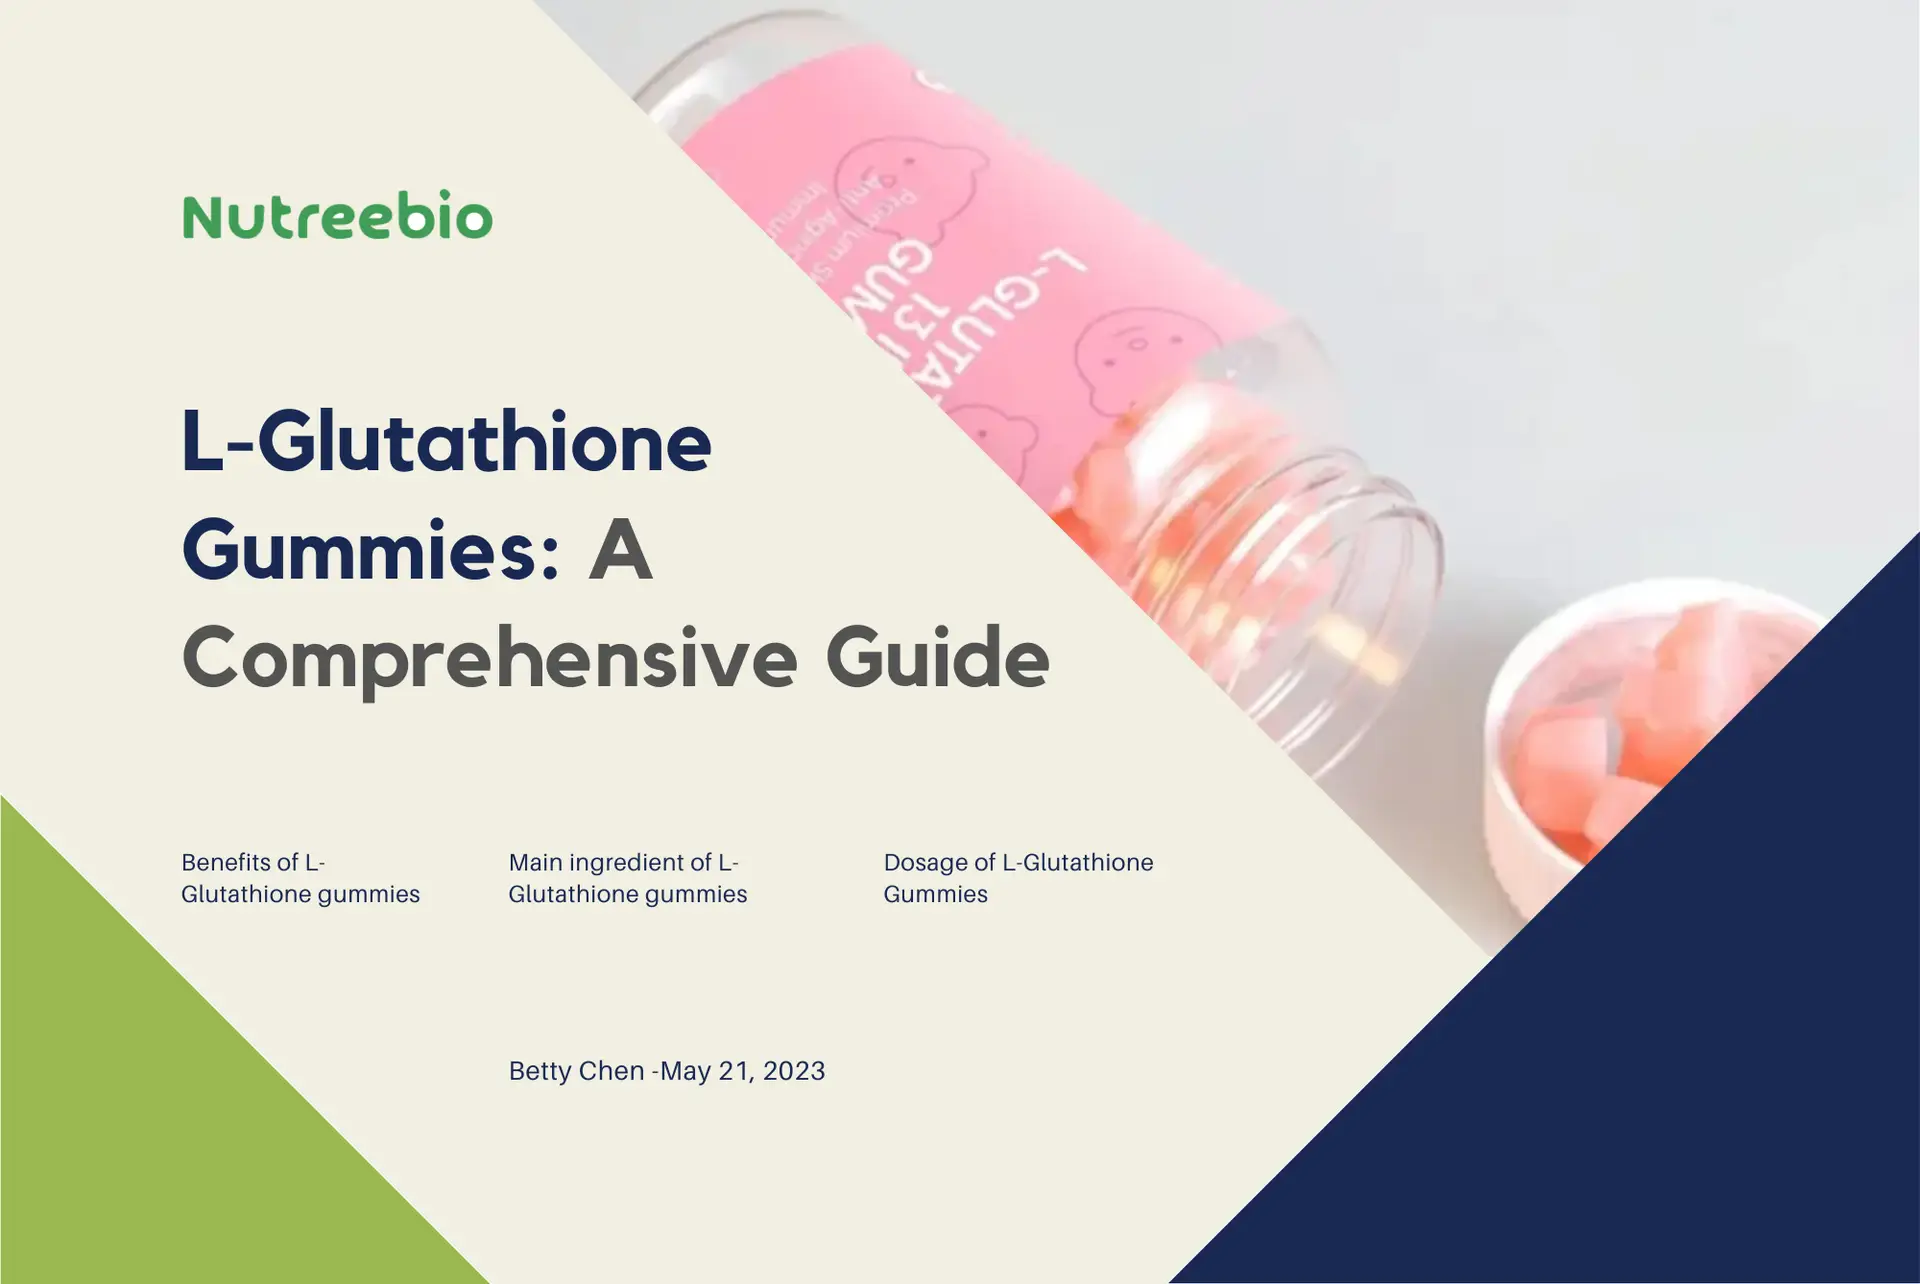 L-Glutathione Gummies: A Comprehensive Guide